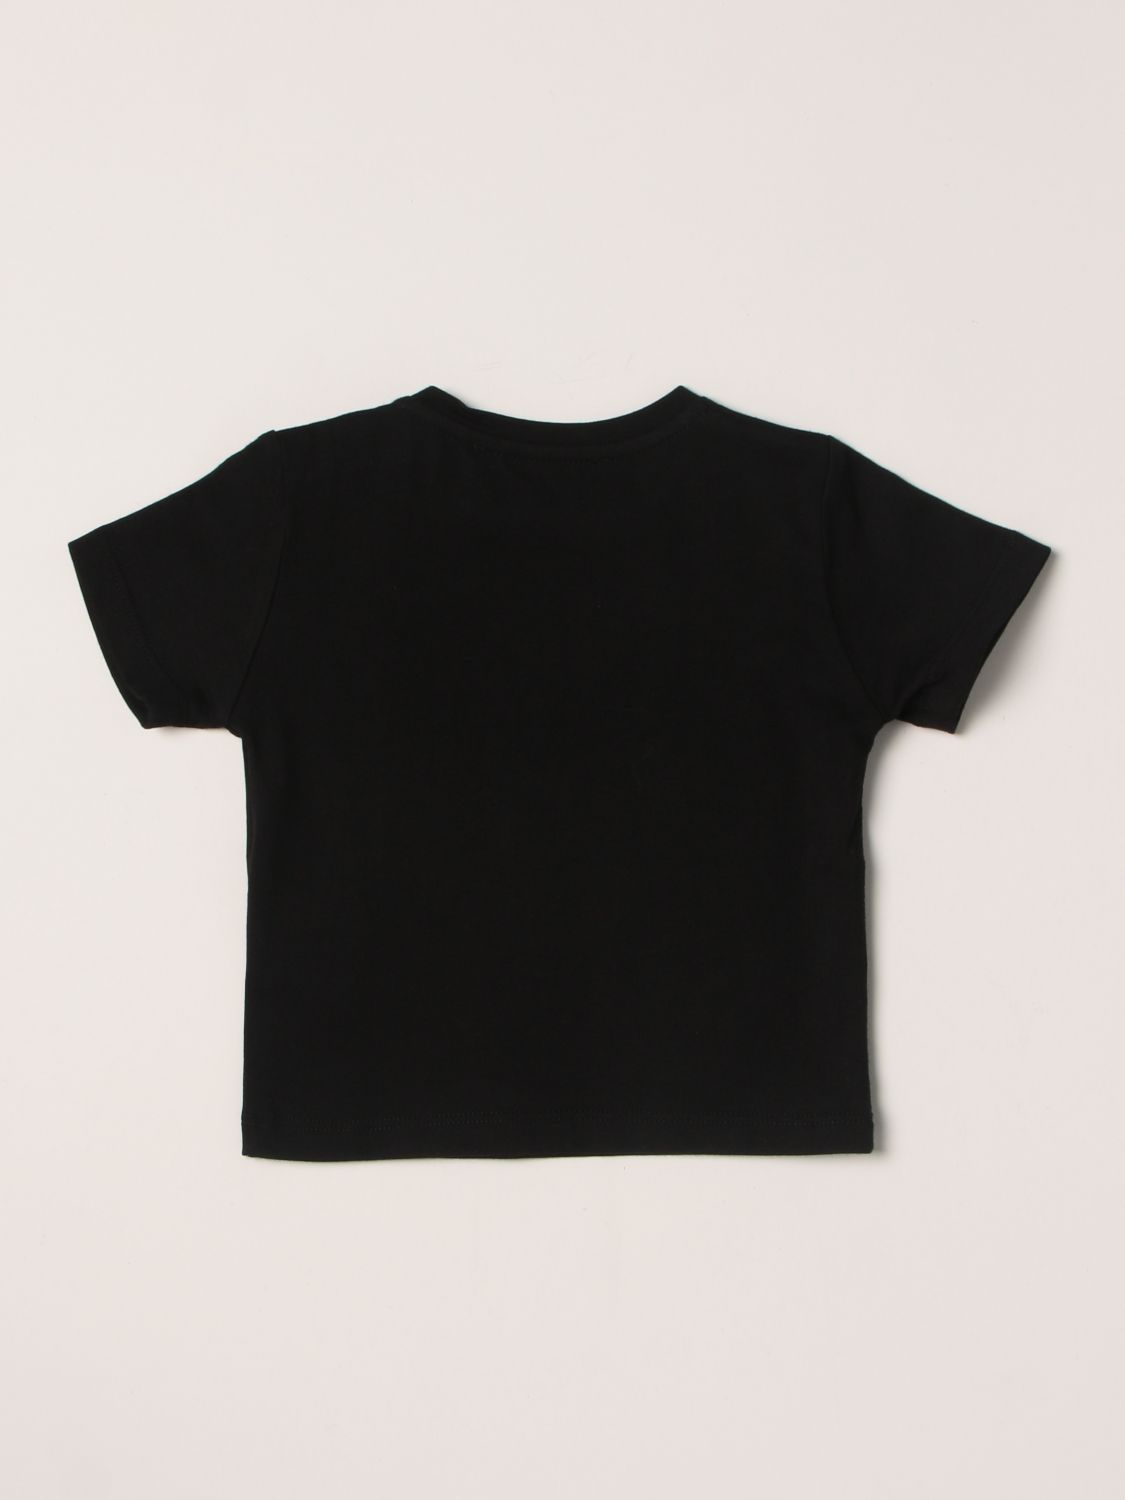 T-Shirt Young Versace: Young Versace Baby T-Shirt schwarz 2